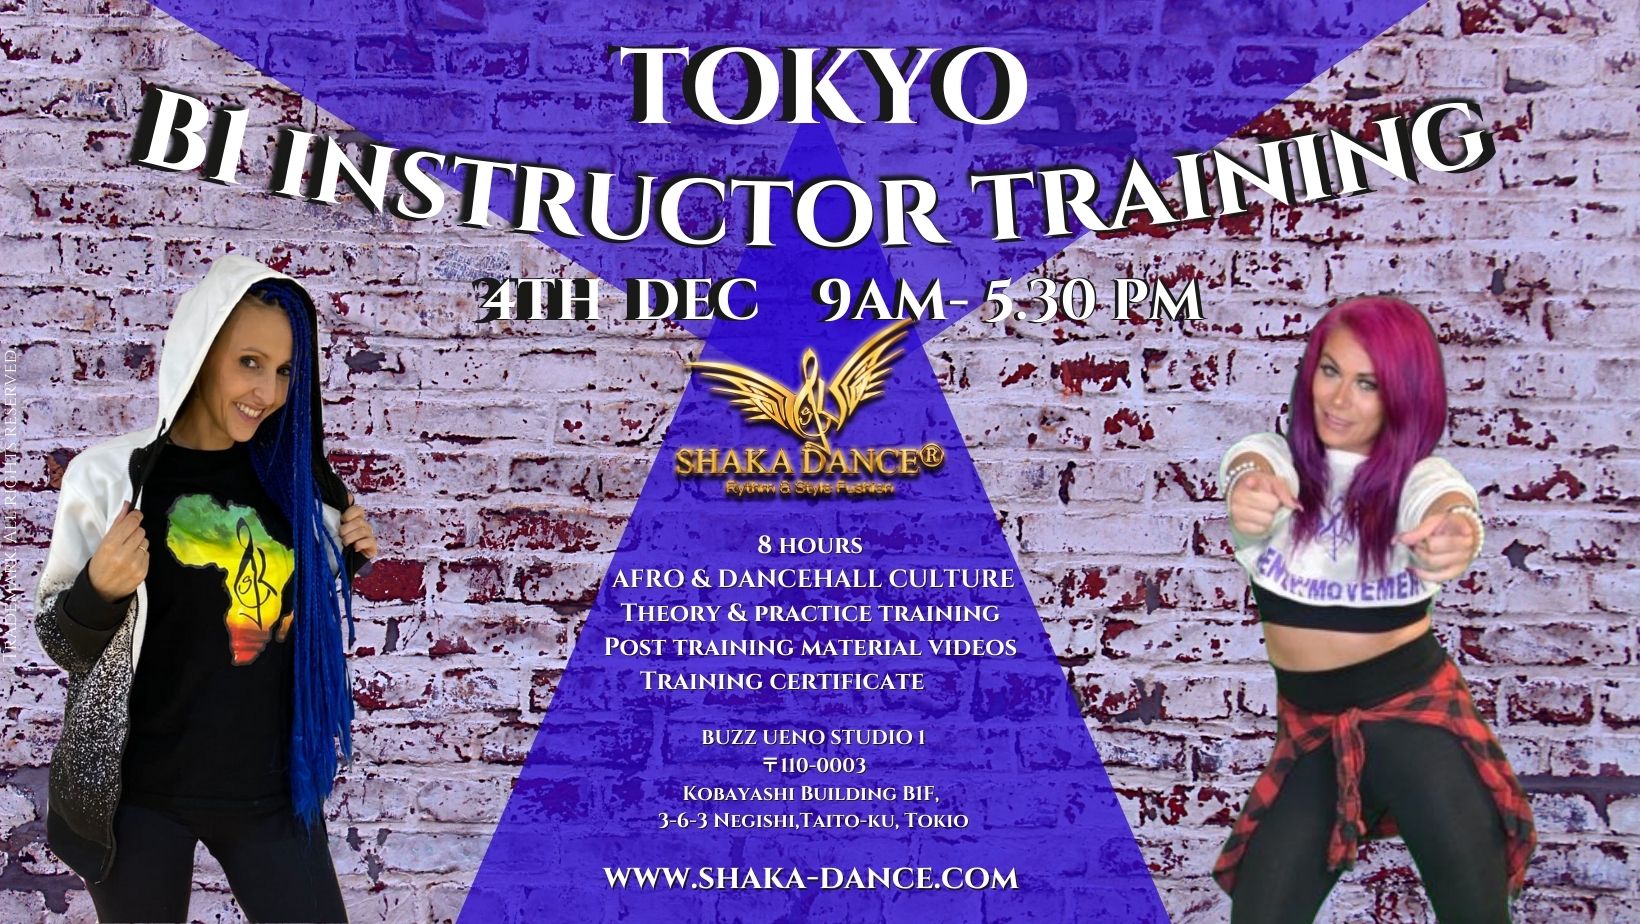 SHAKA DANCE® B1 Instructor Training Tokyo